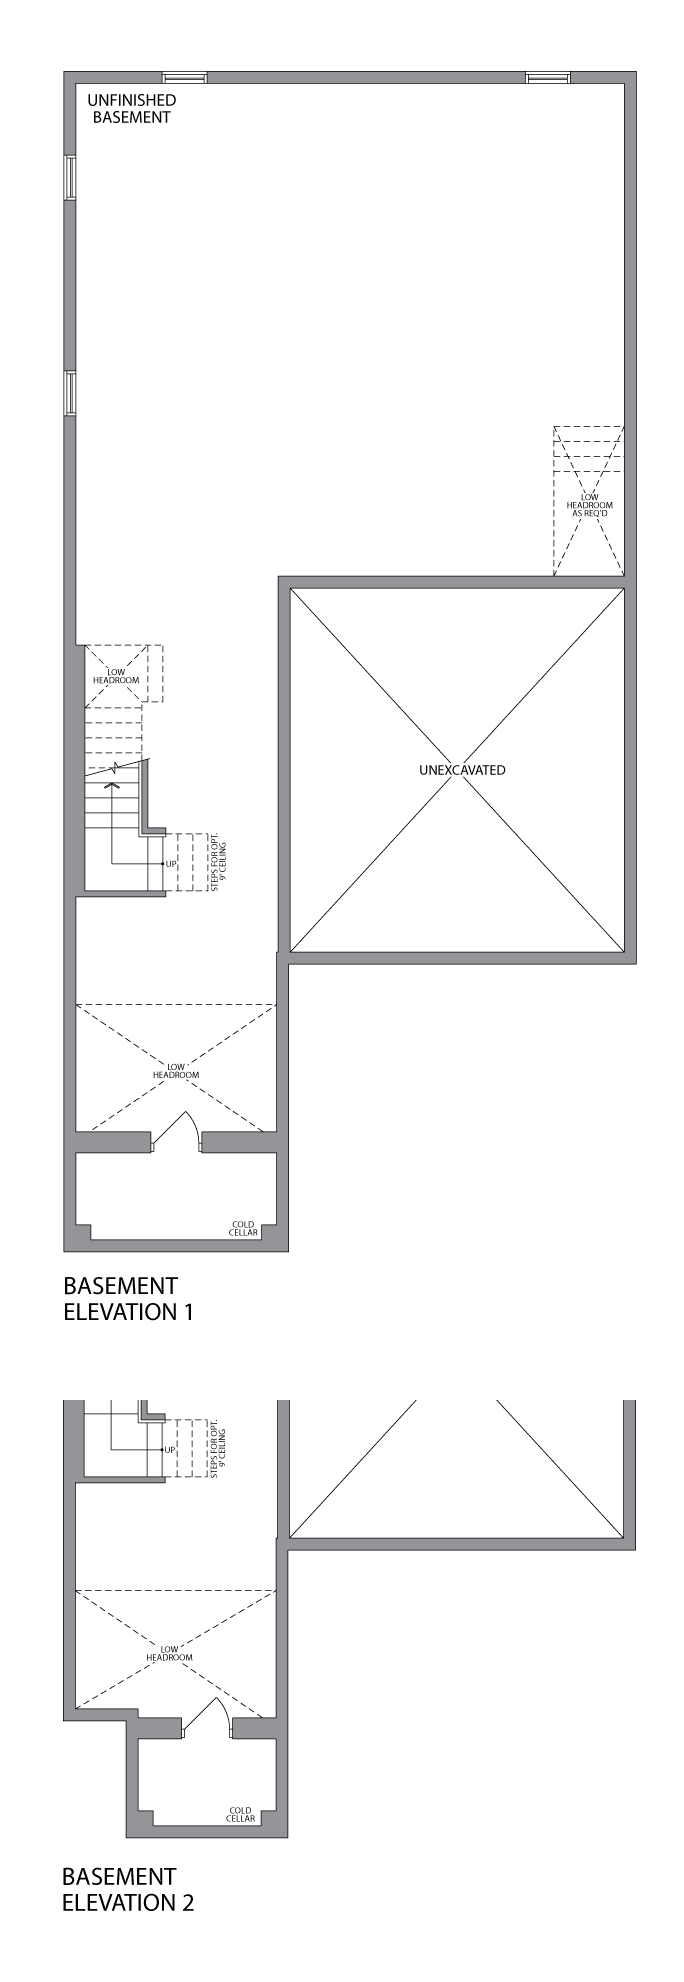 The Finley  basement  